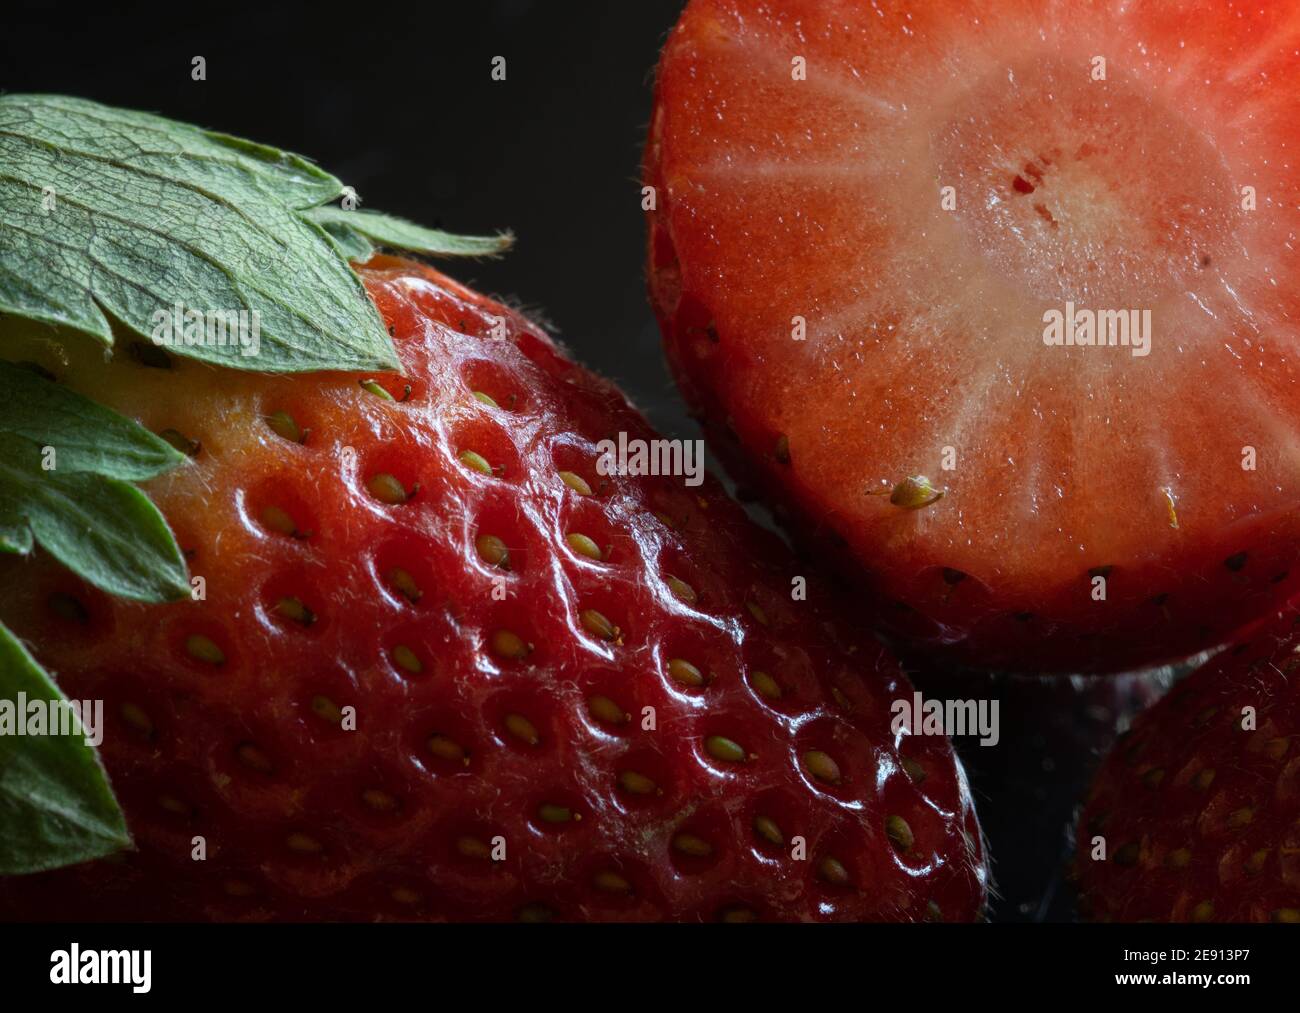 Fresh strawberries close-up Stock Photo